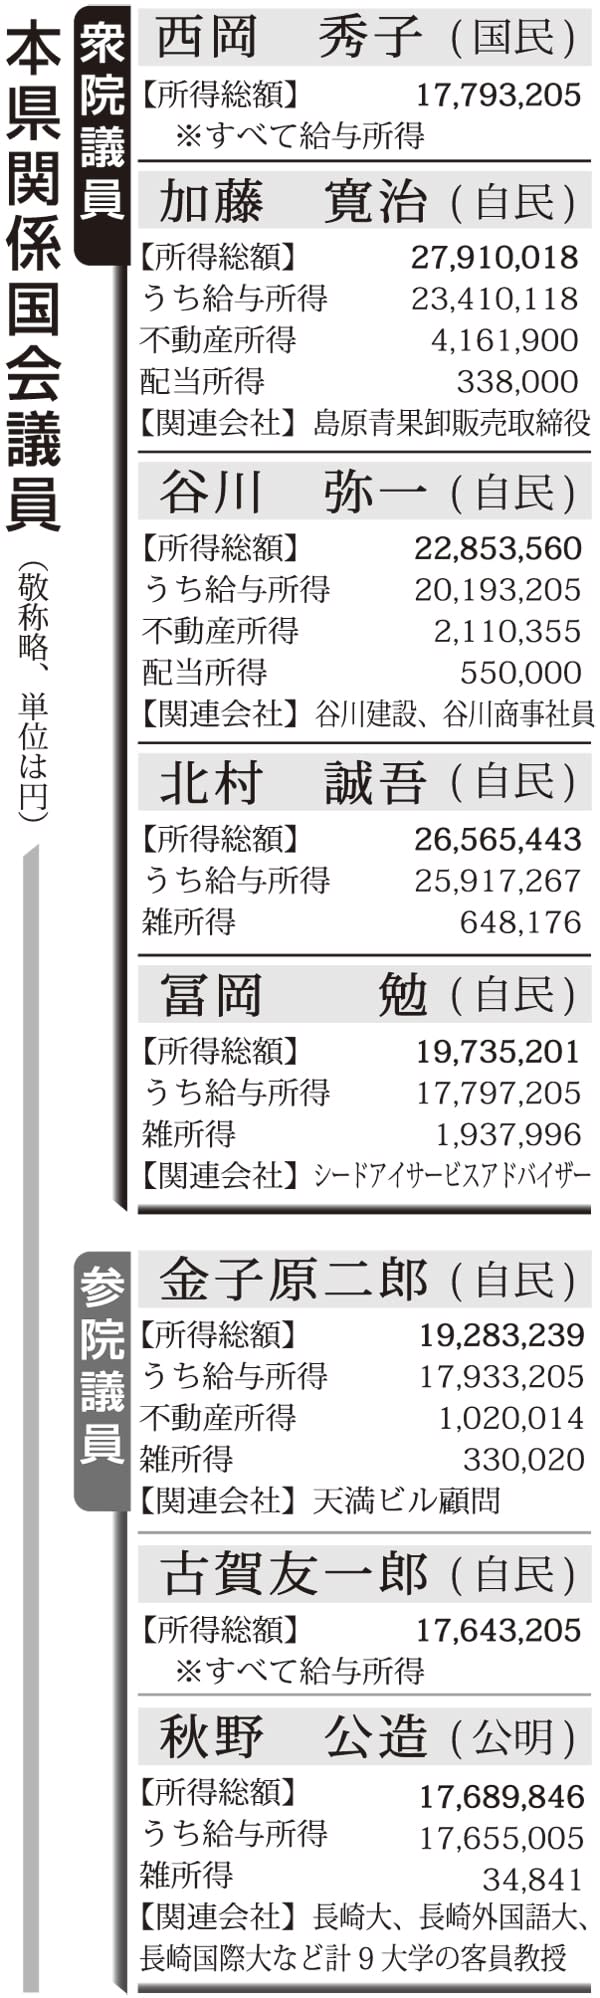 国会議員所得公開 年分 長崎県首位は加藤氏2790万円 長崎新聞